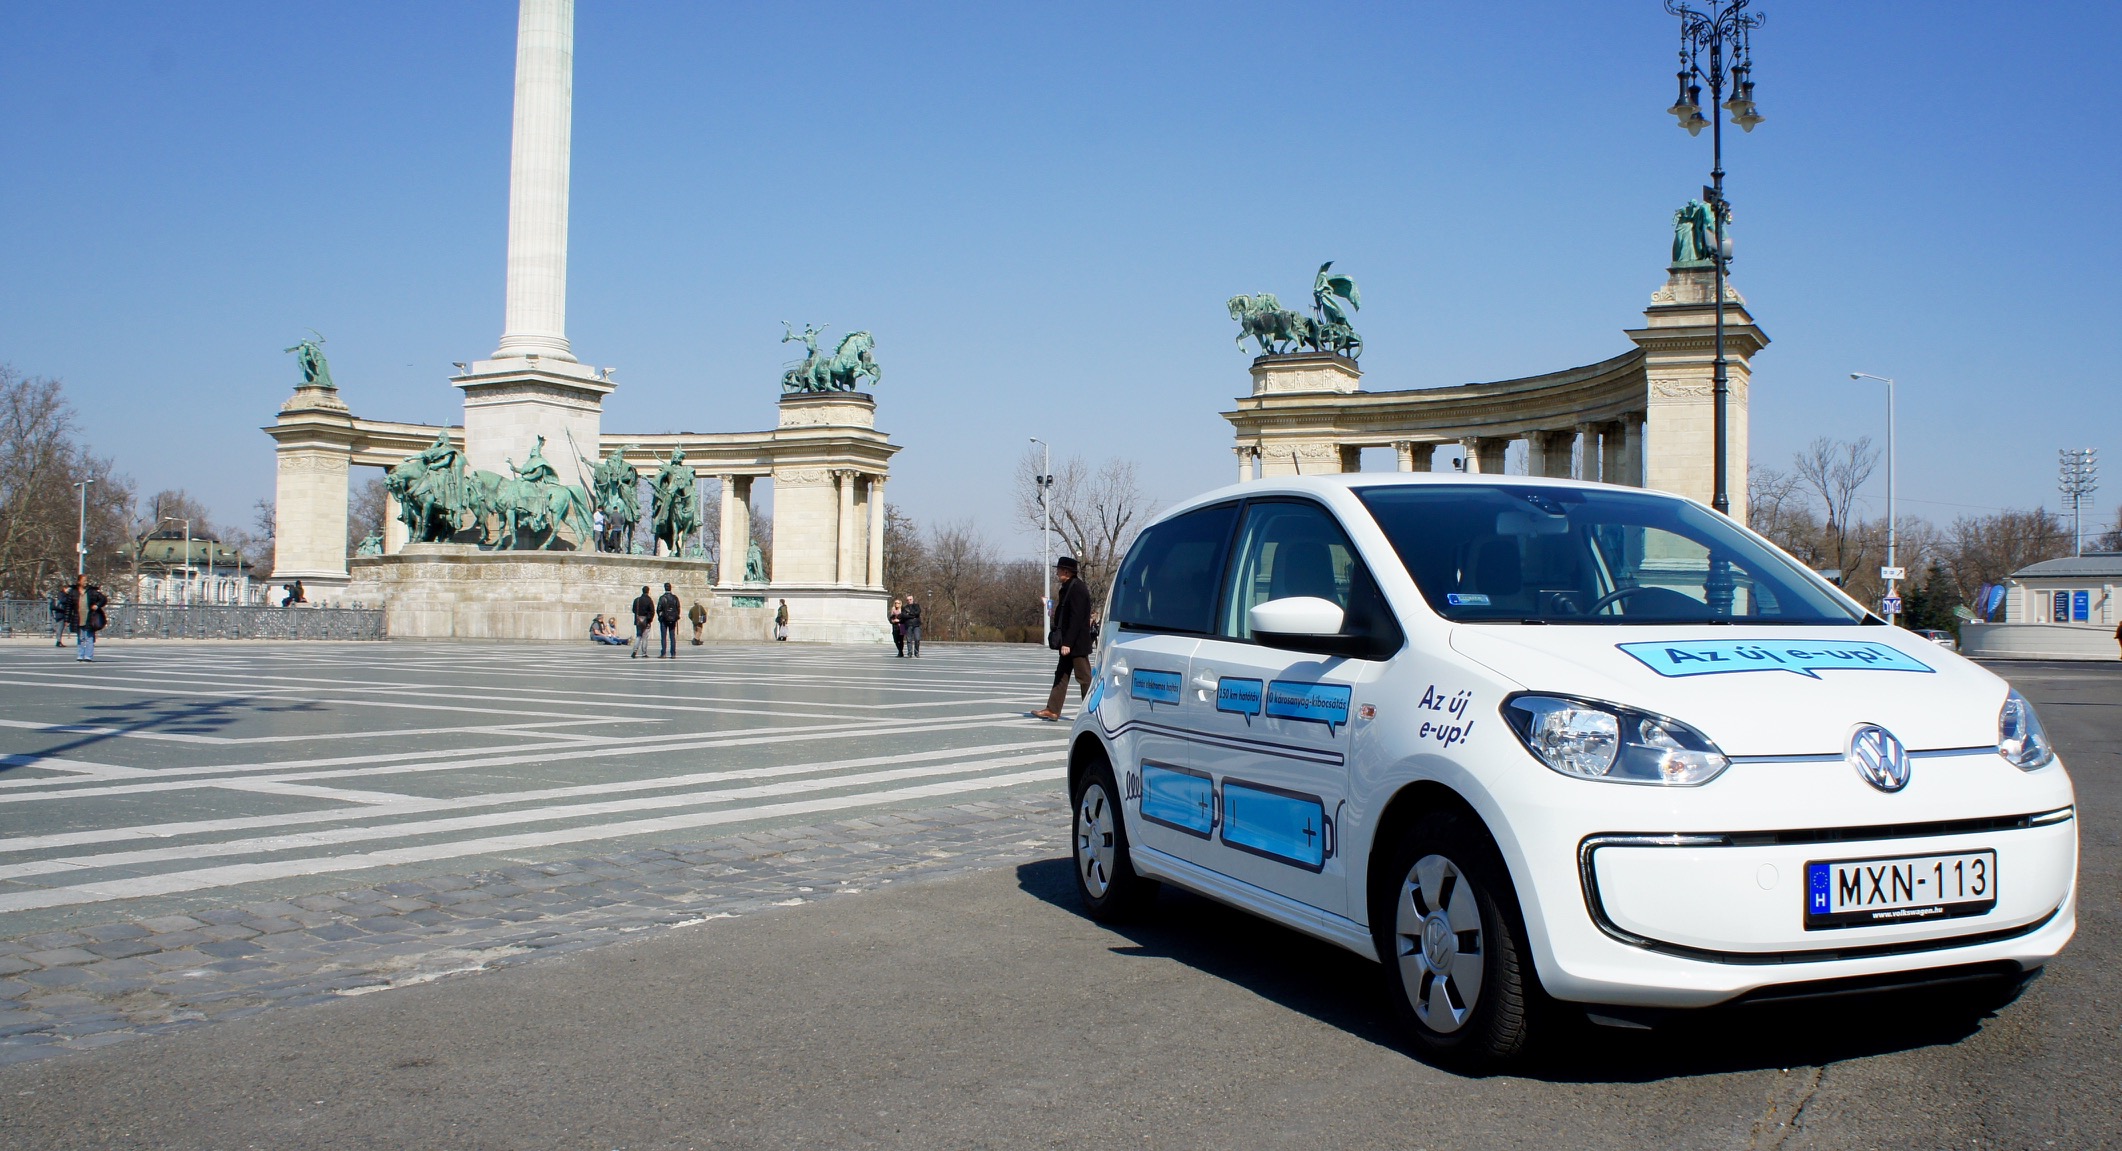 Folytatódik a villanyautó mizériám: VW e-Up teszt